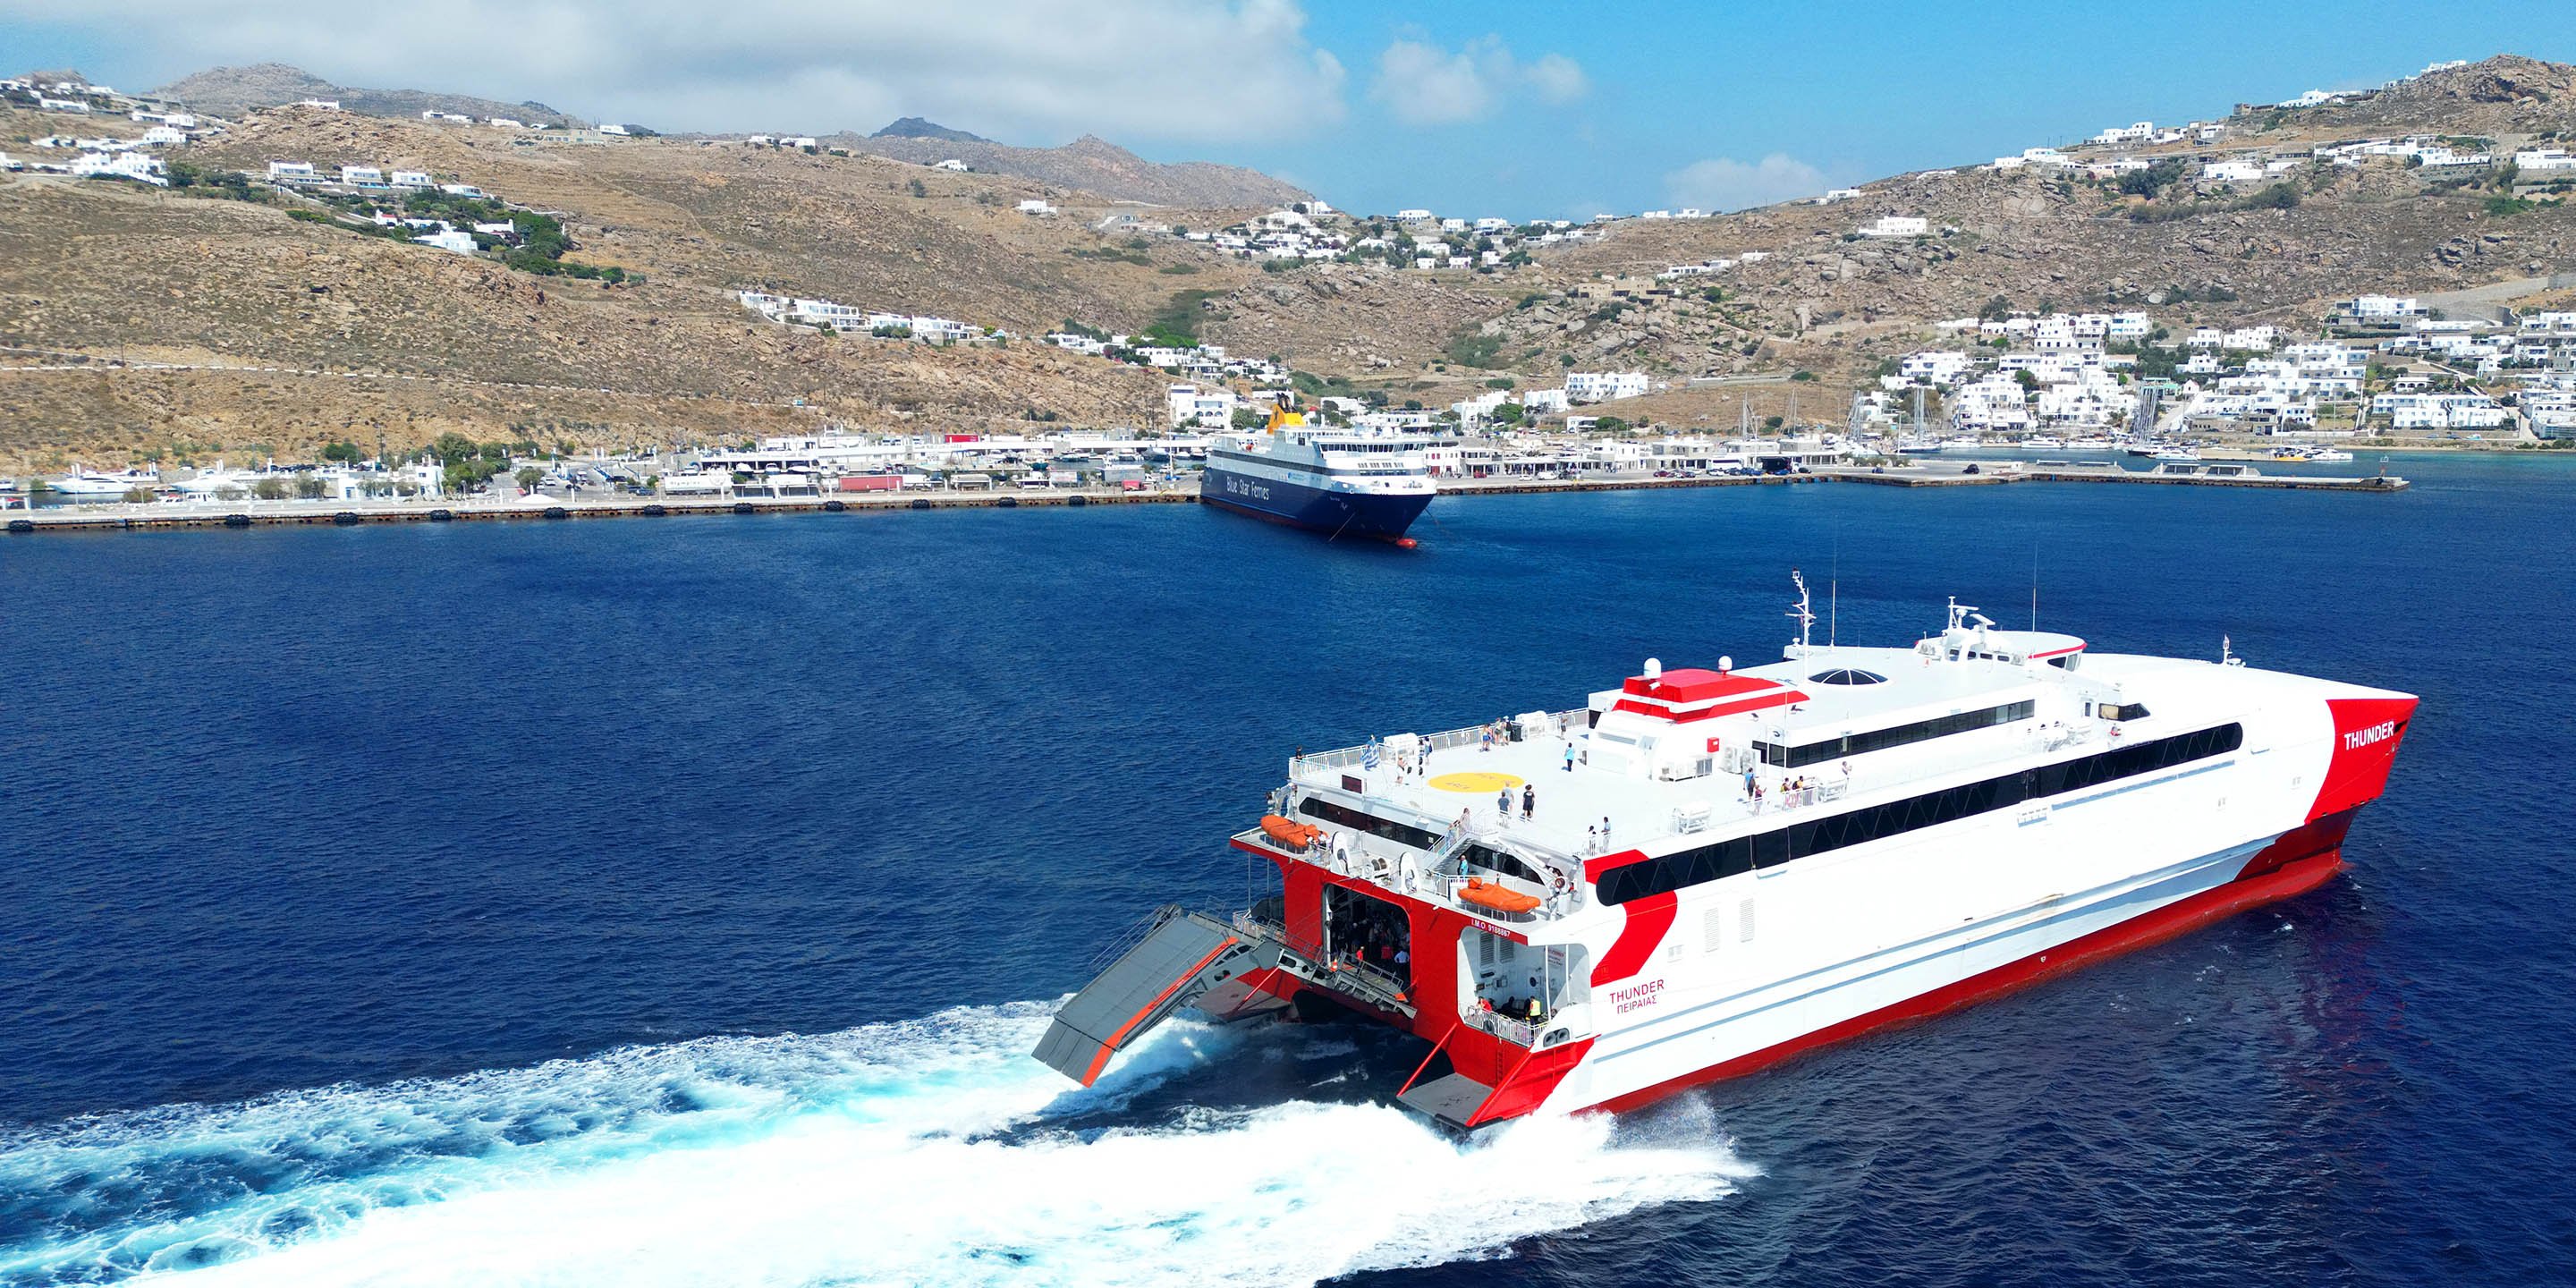 Le ferry à grande vitesse Thunder arrive au nouveau port de Mykonos, en provenance d'Athènes